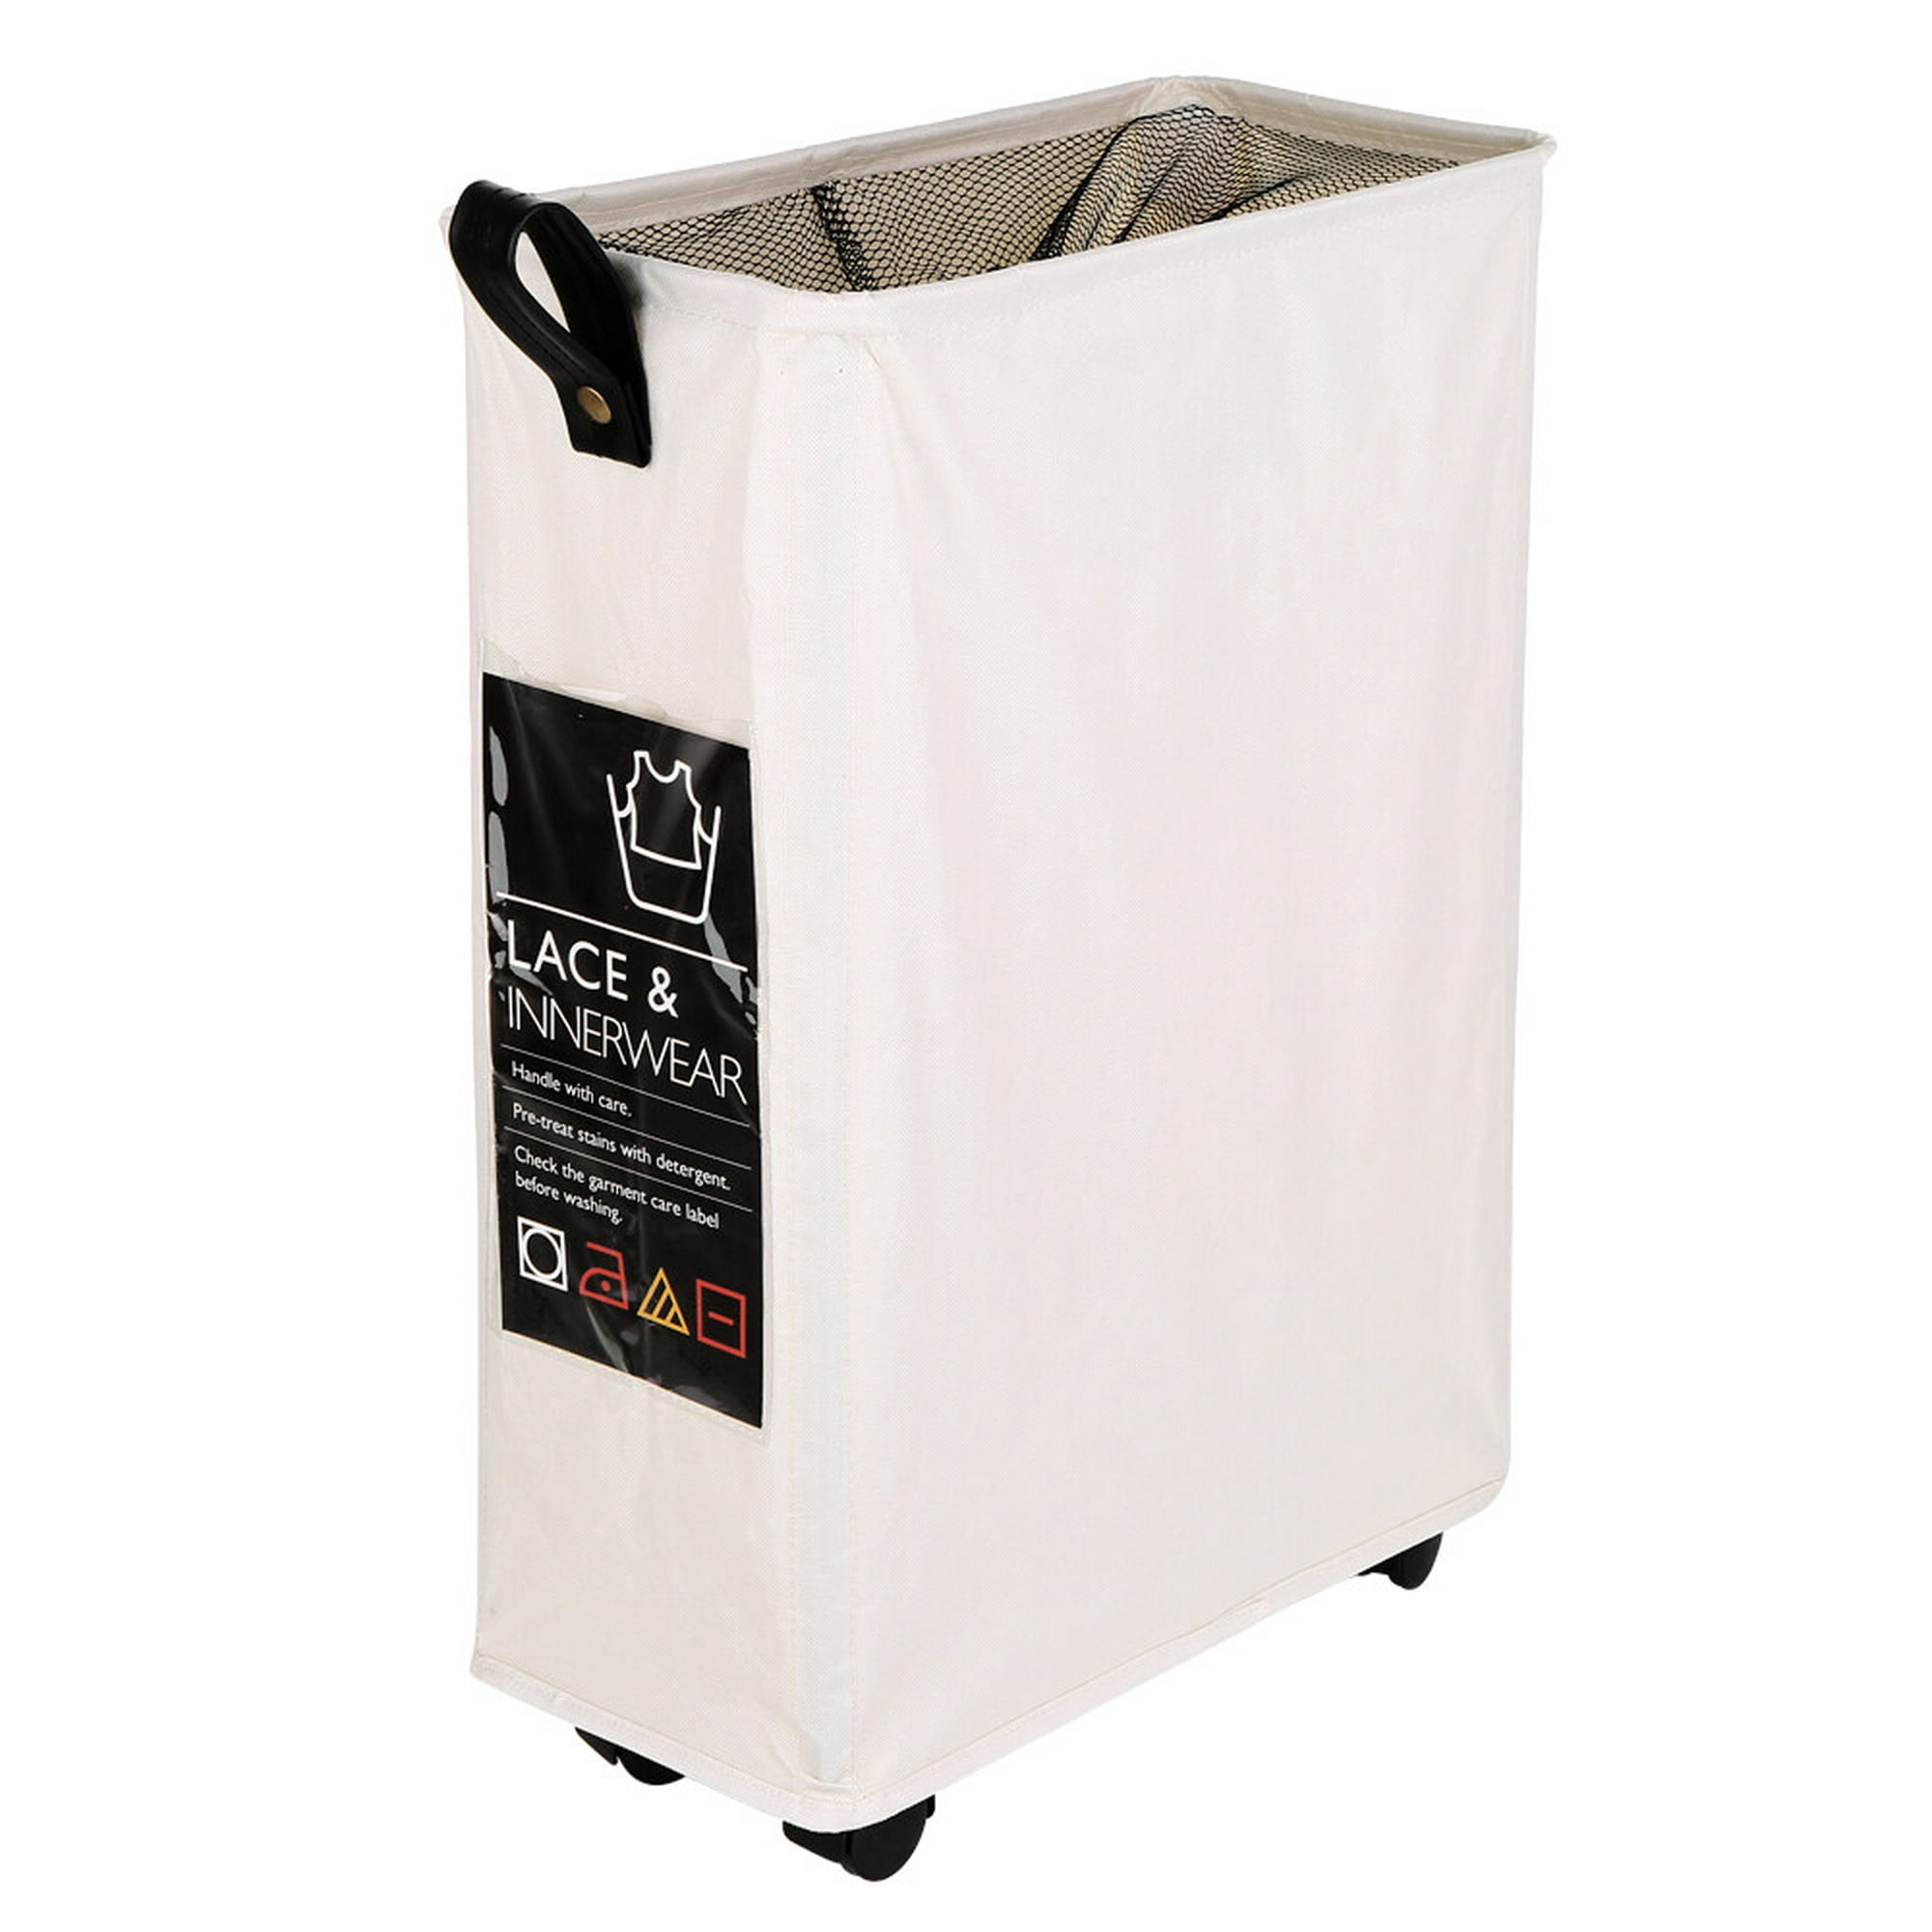 cesto para ropa sucia, delgado, 4 ruedas, incluye bolsa interior de malla,  19 x 39 x 57.5 cm comprar online barato